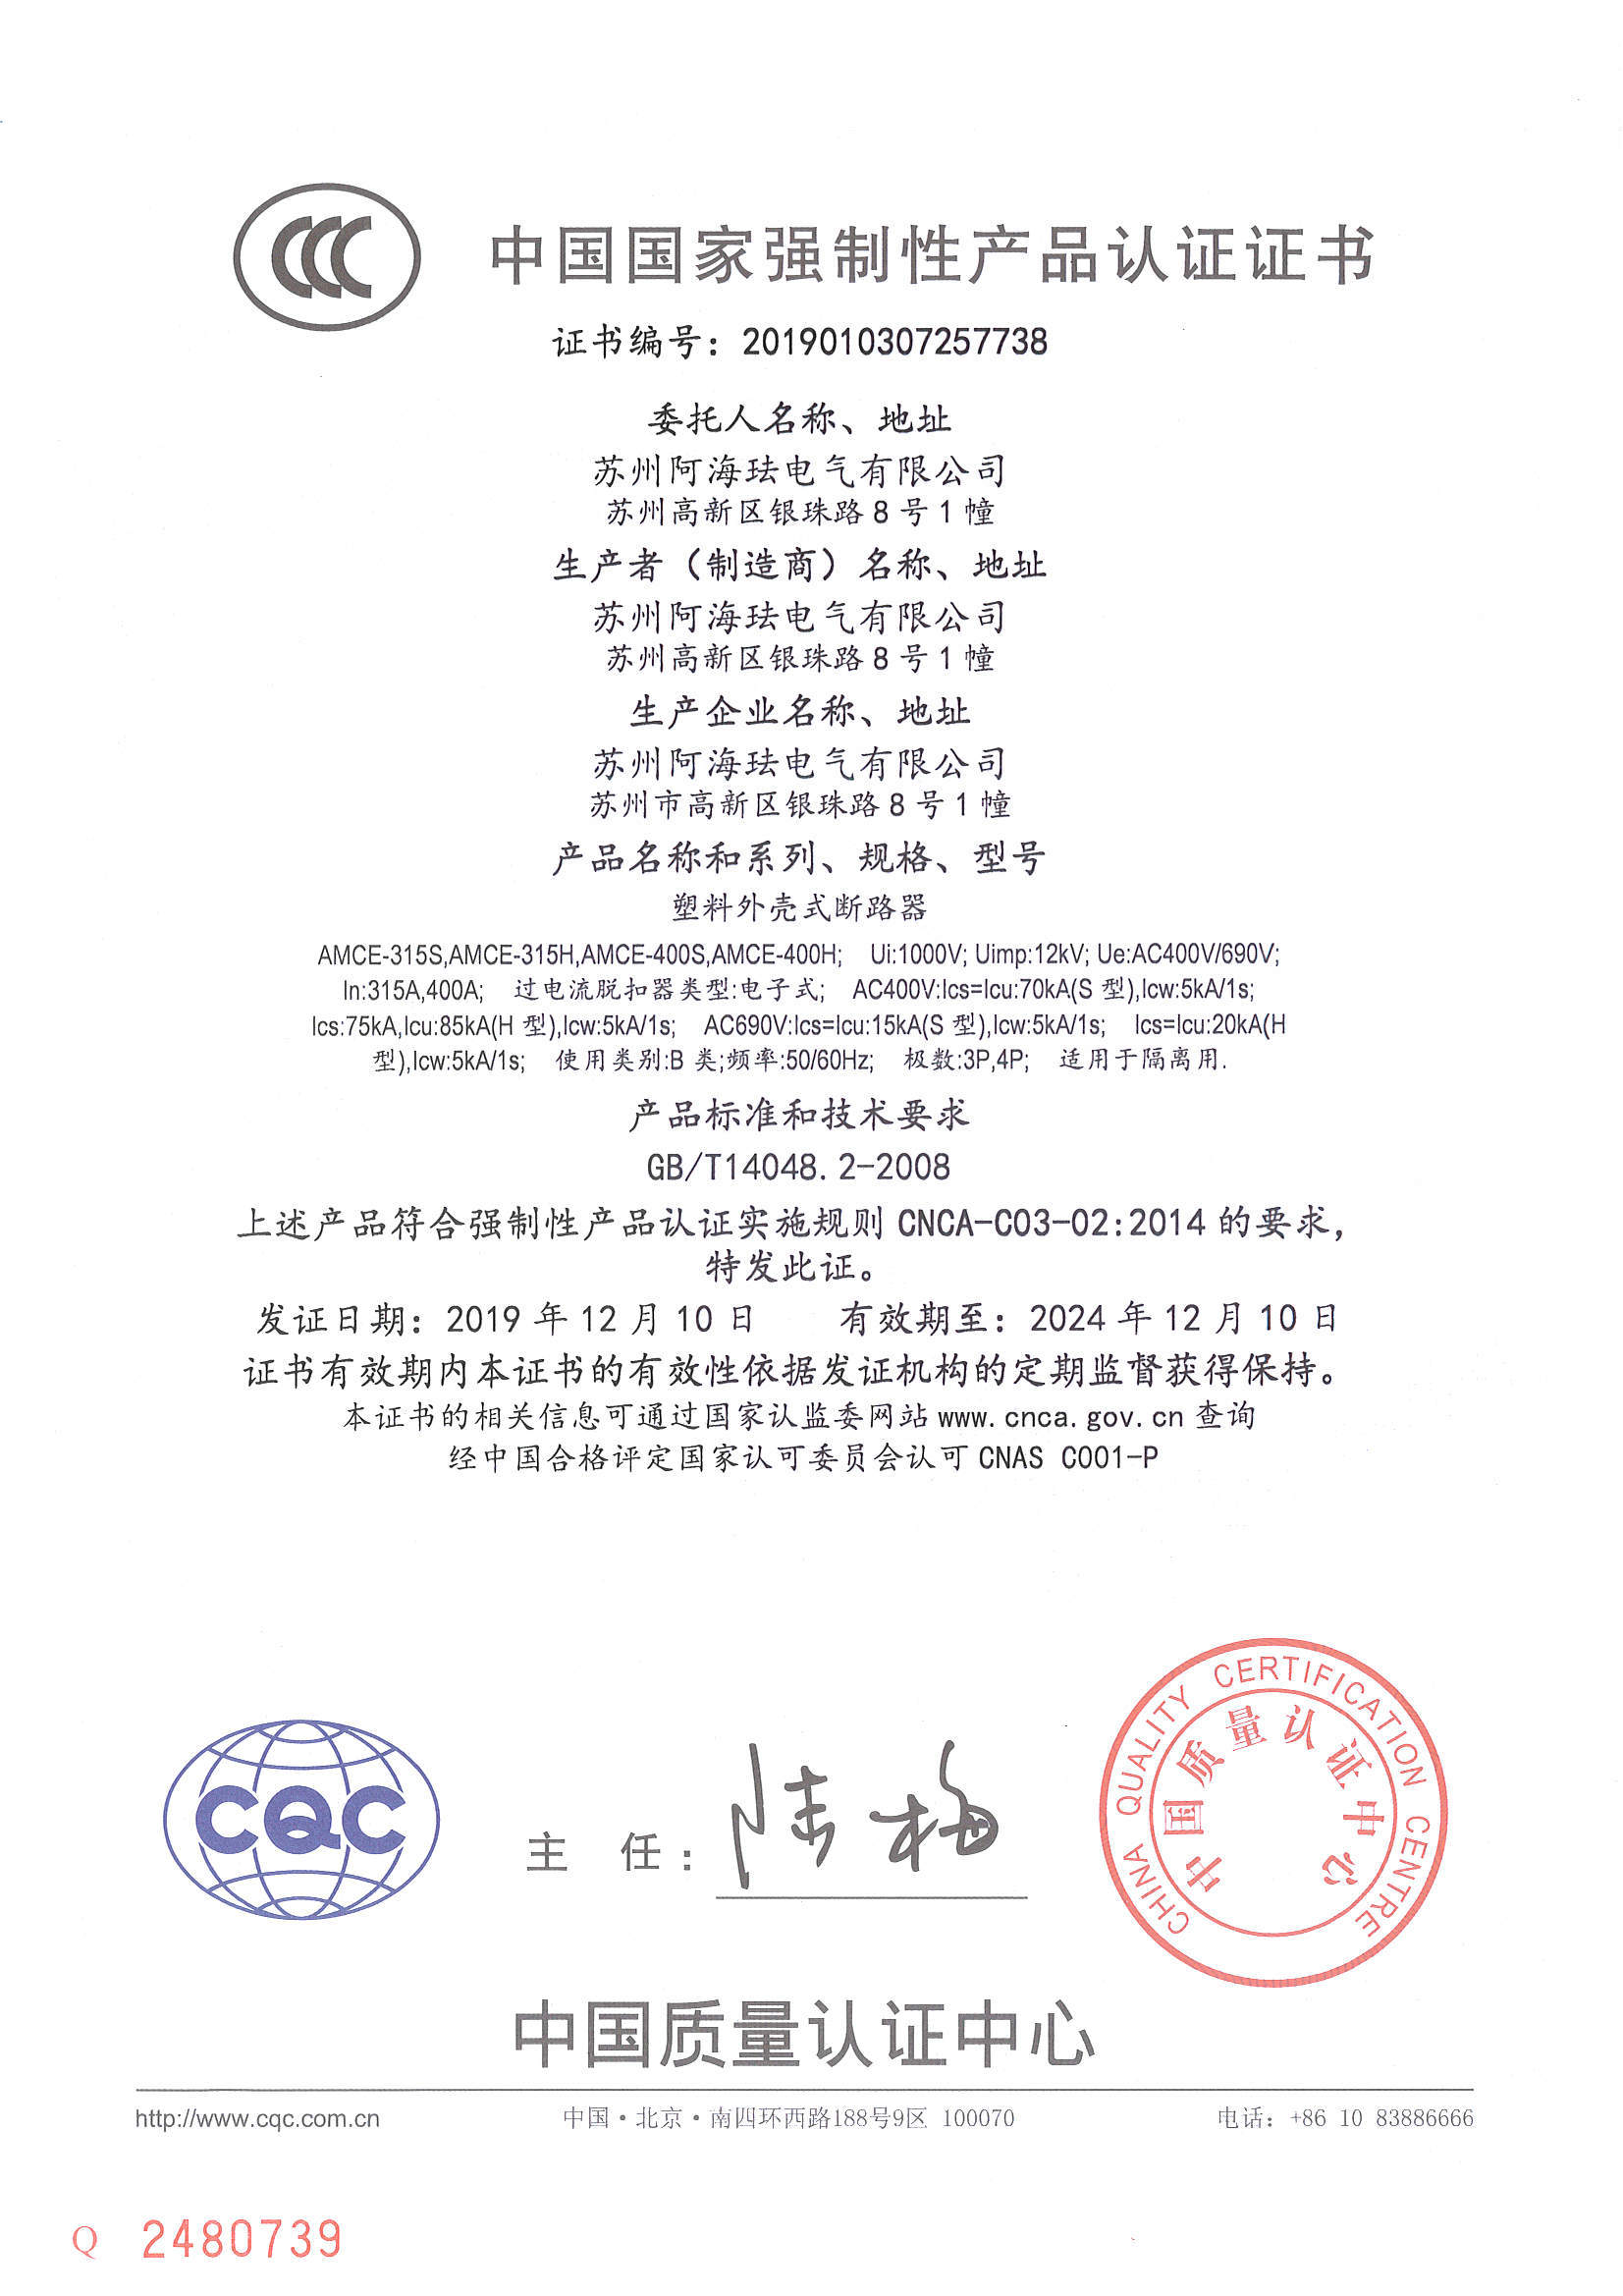 AMCE400 CCC certificate